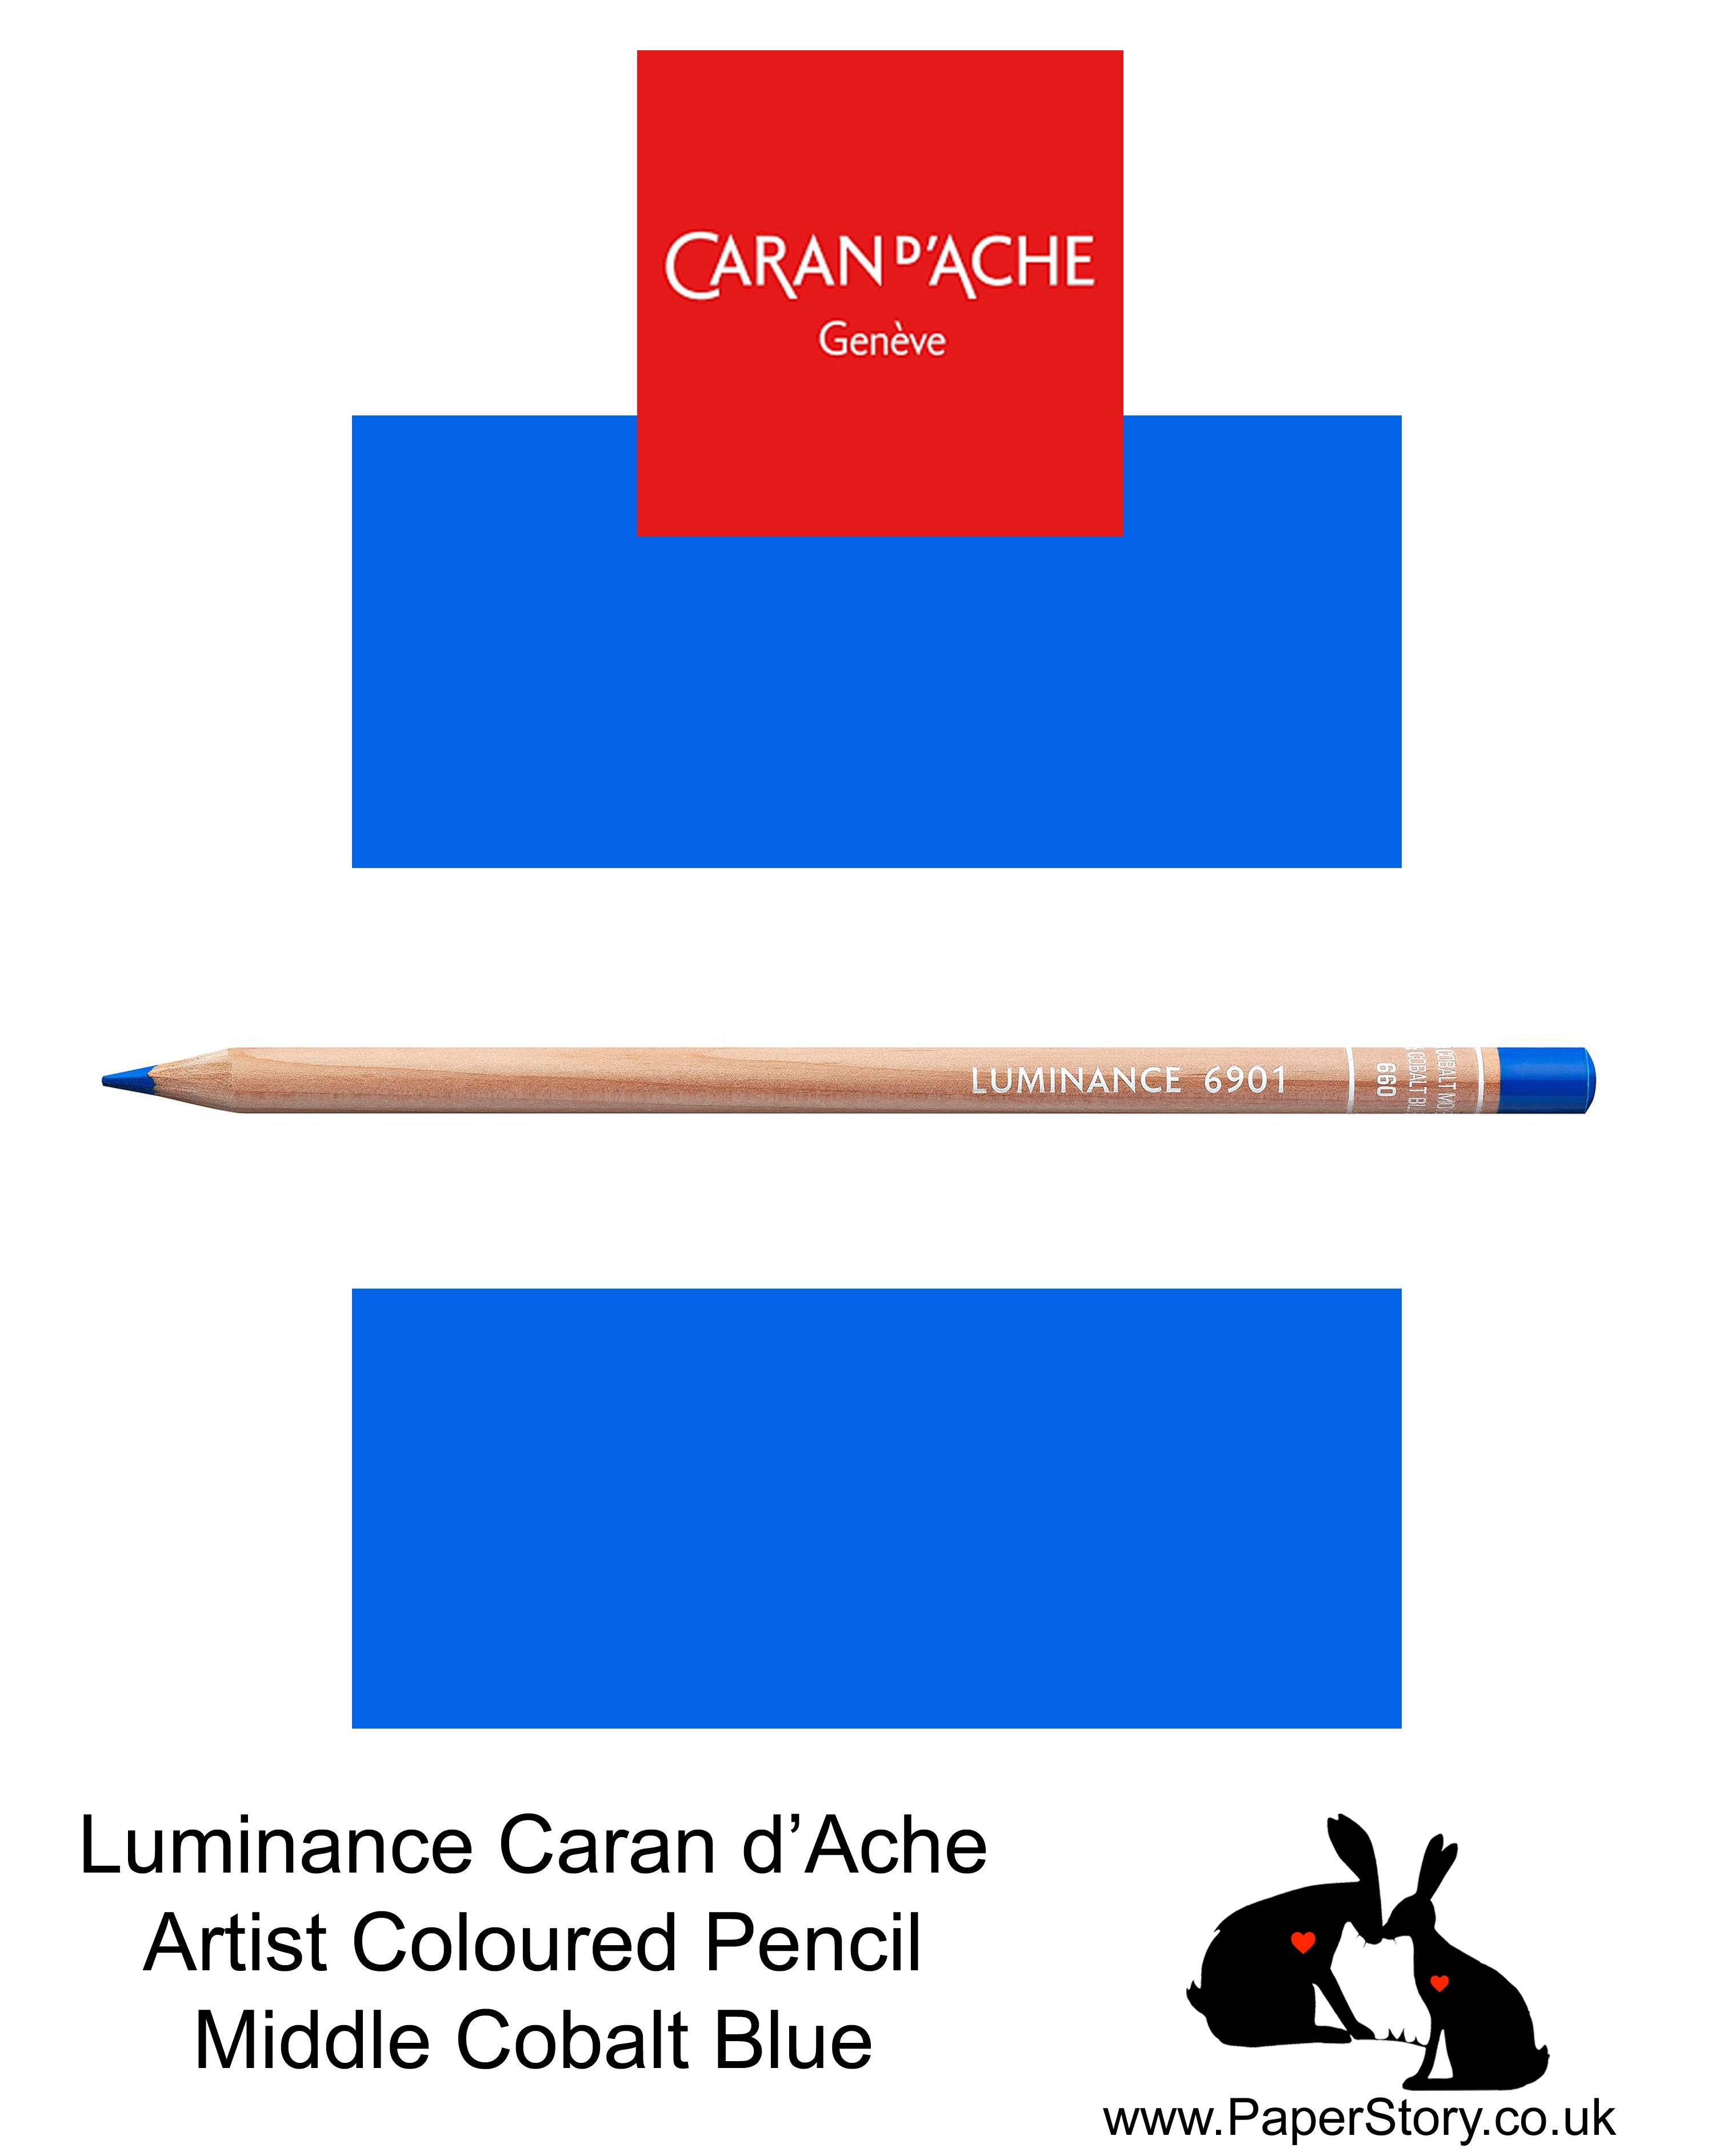 Caran d'Ache Luminance individual Artist Colour Pencils 6901 Middle Cobalt Blue 660